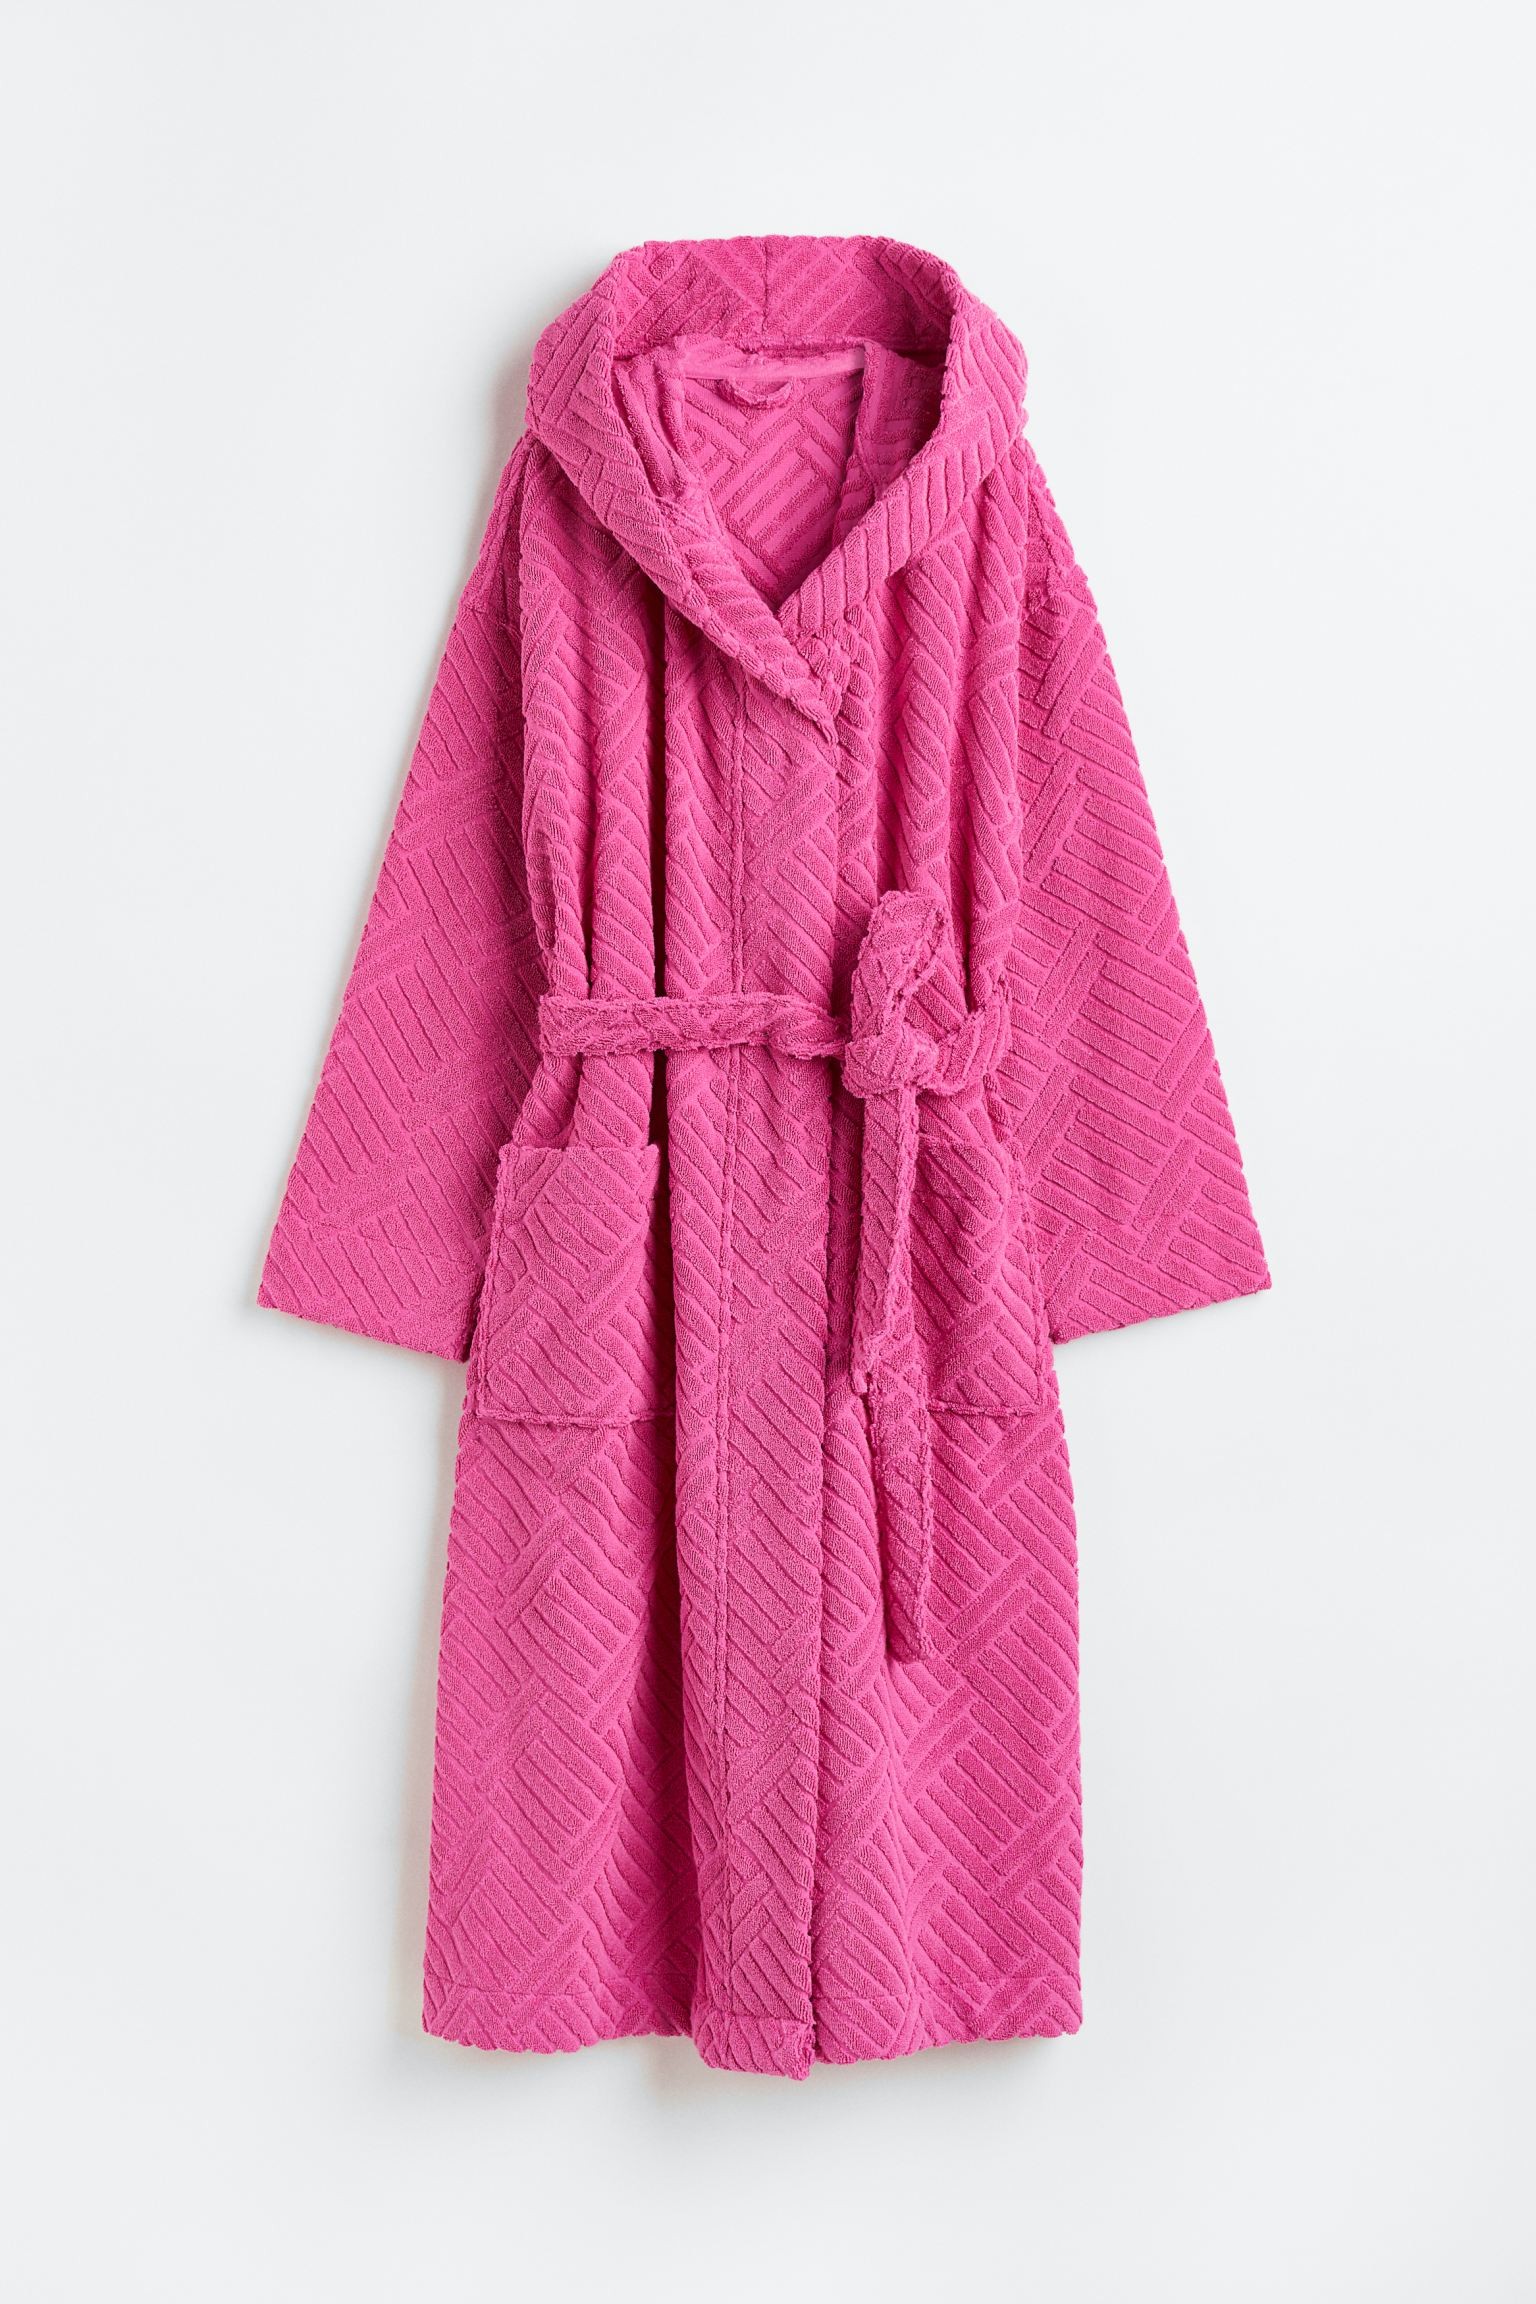 Махровый халат с капюшоном, Розовый/Узор, Разные размеры